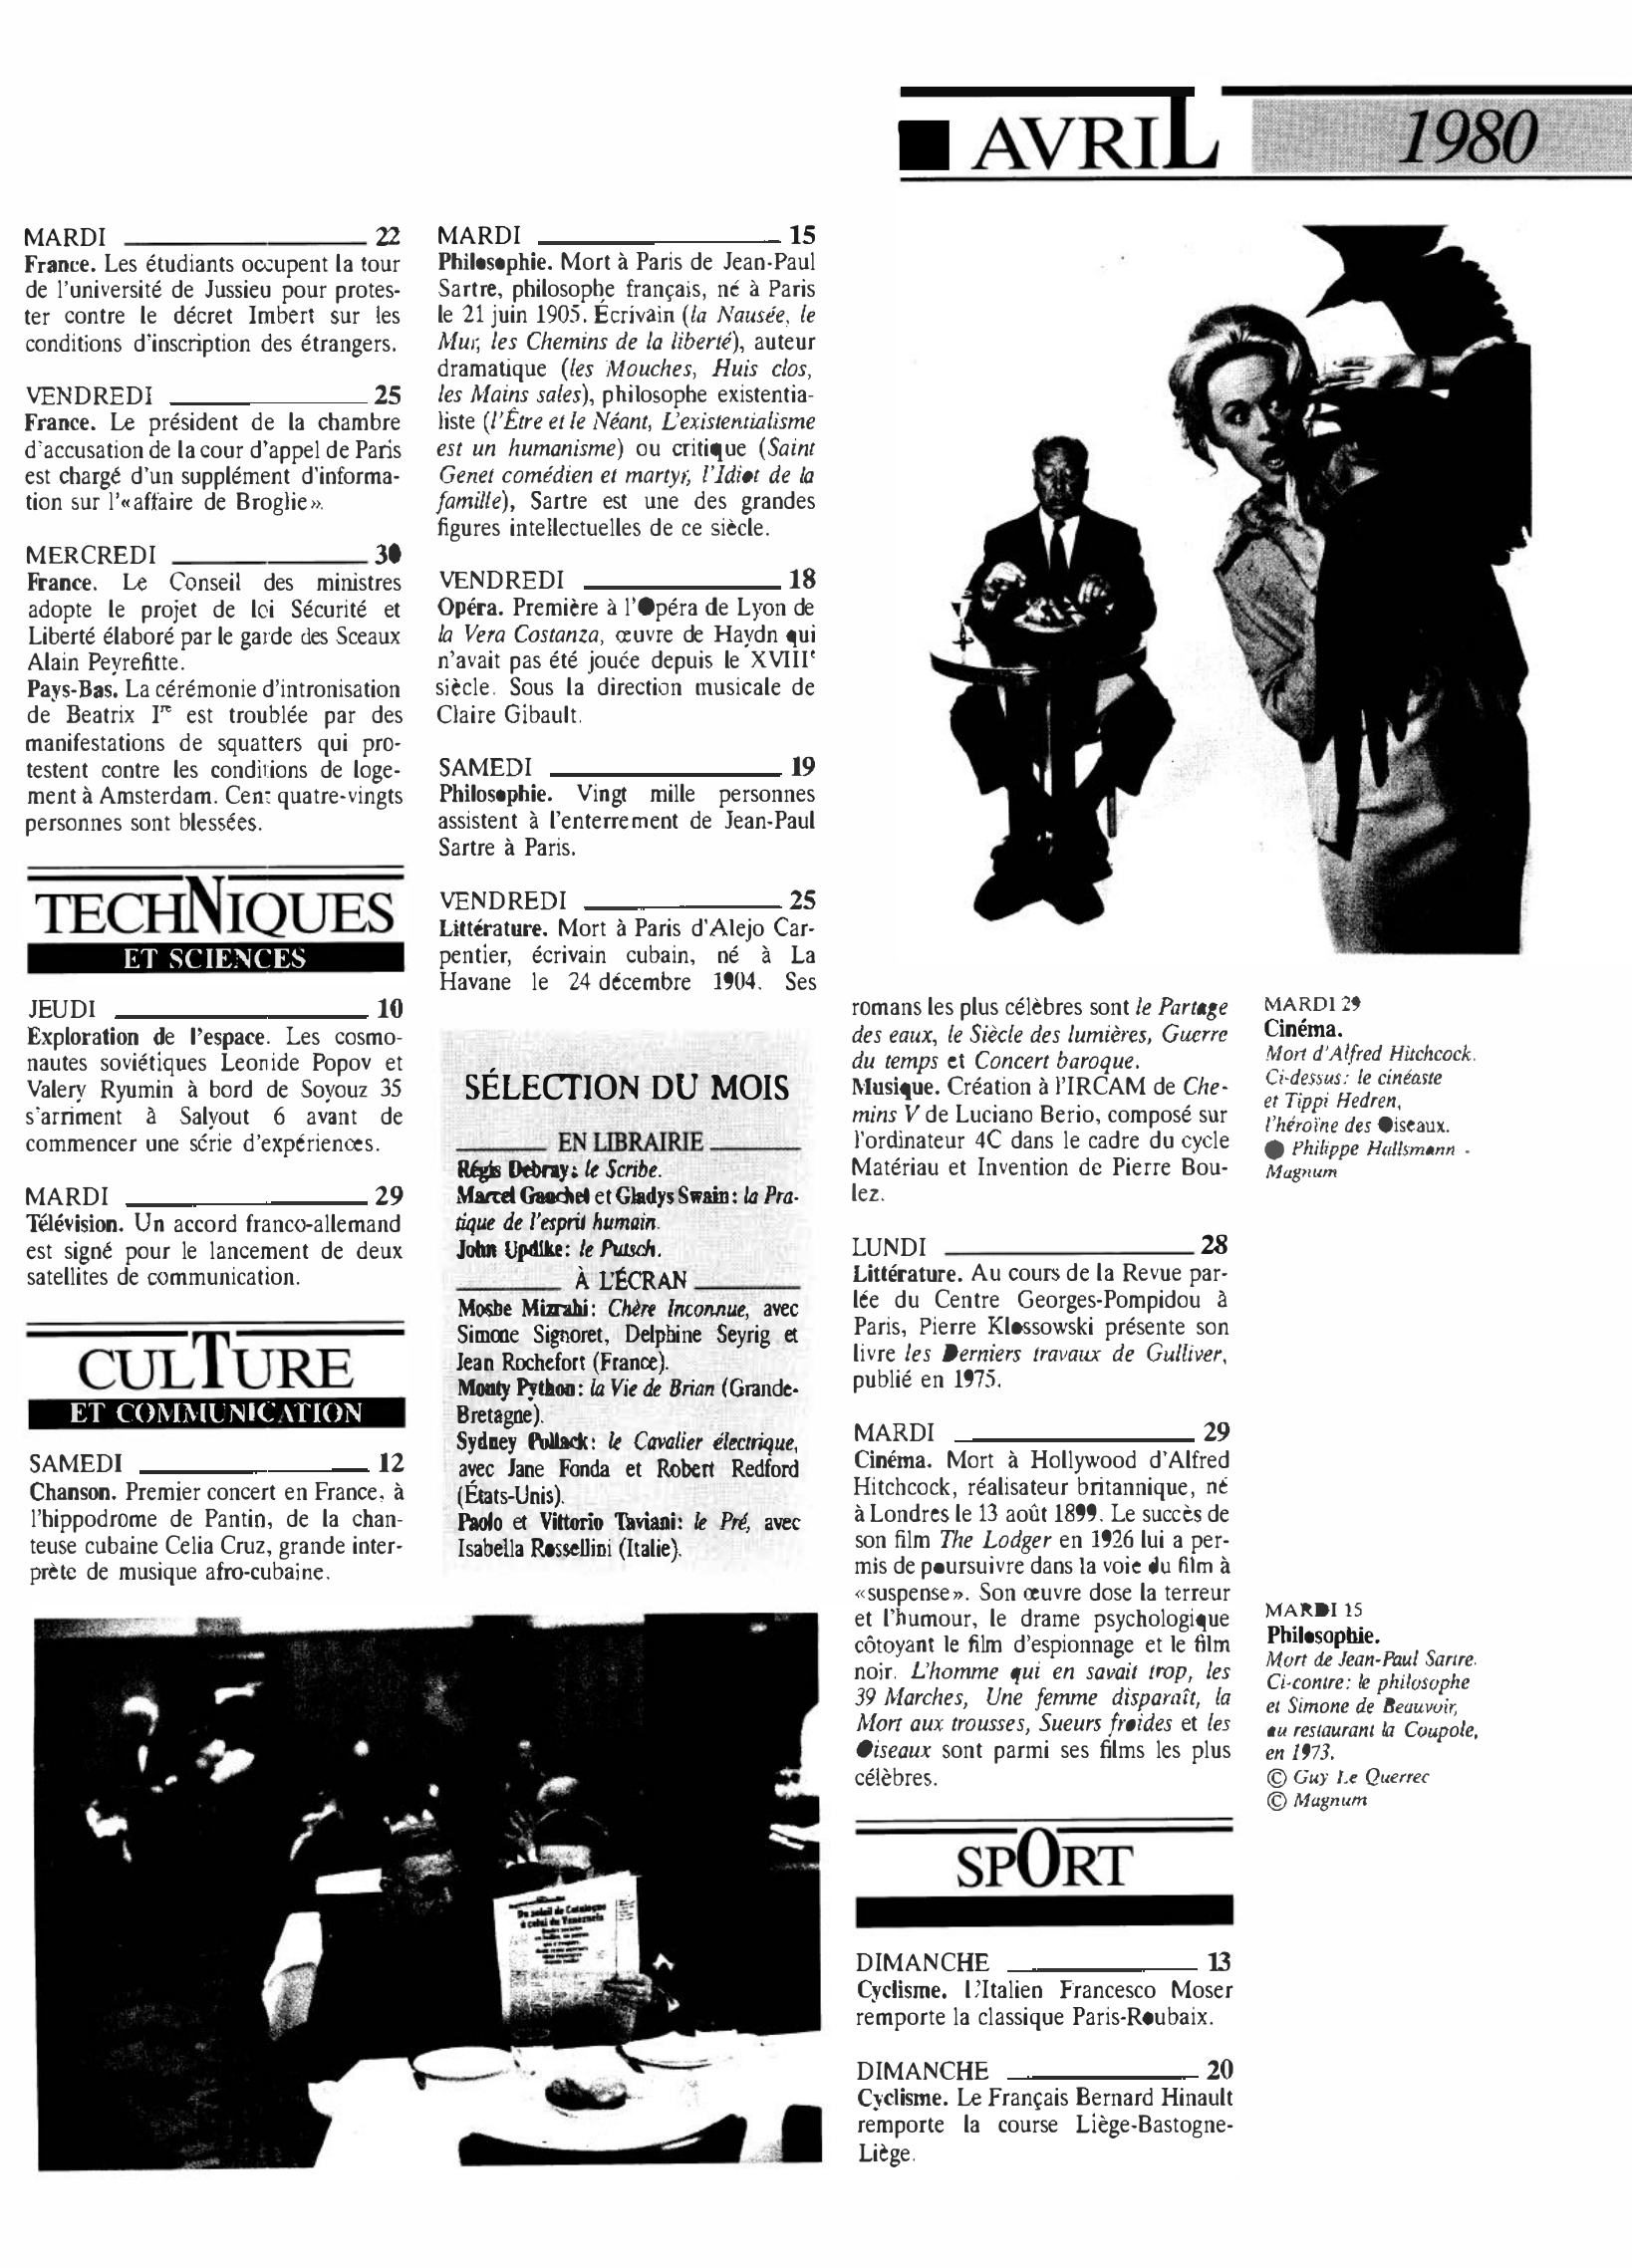 Prévisualisation du document 1980 Avril dans le monde (histoire chronologique)